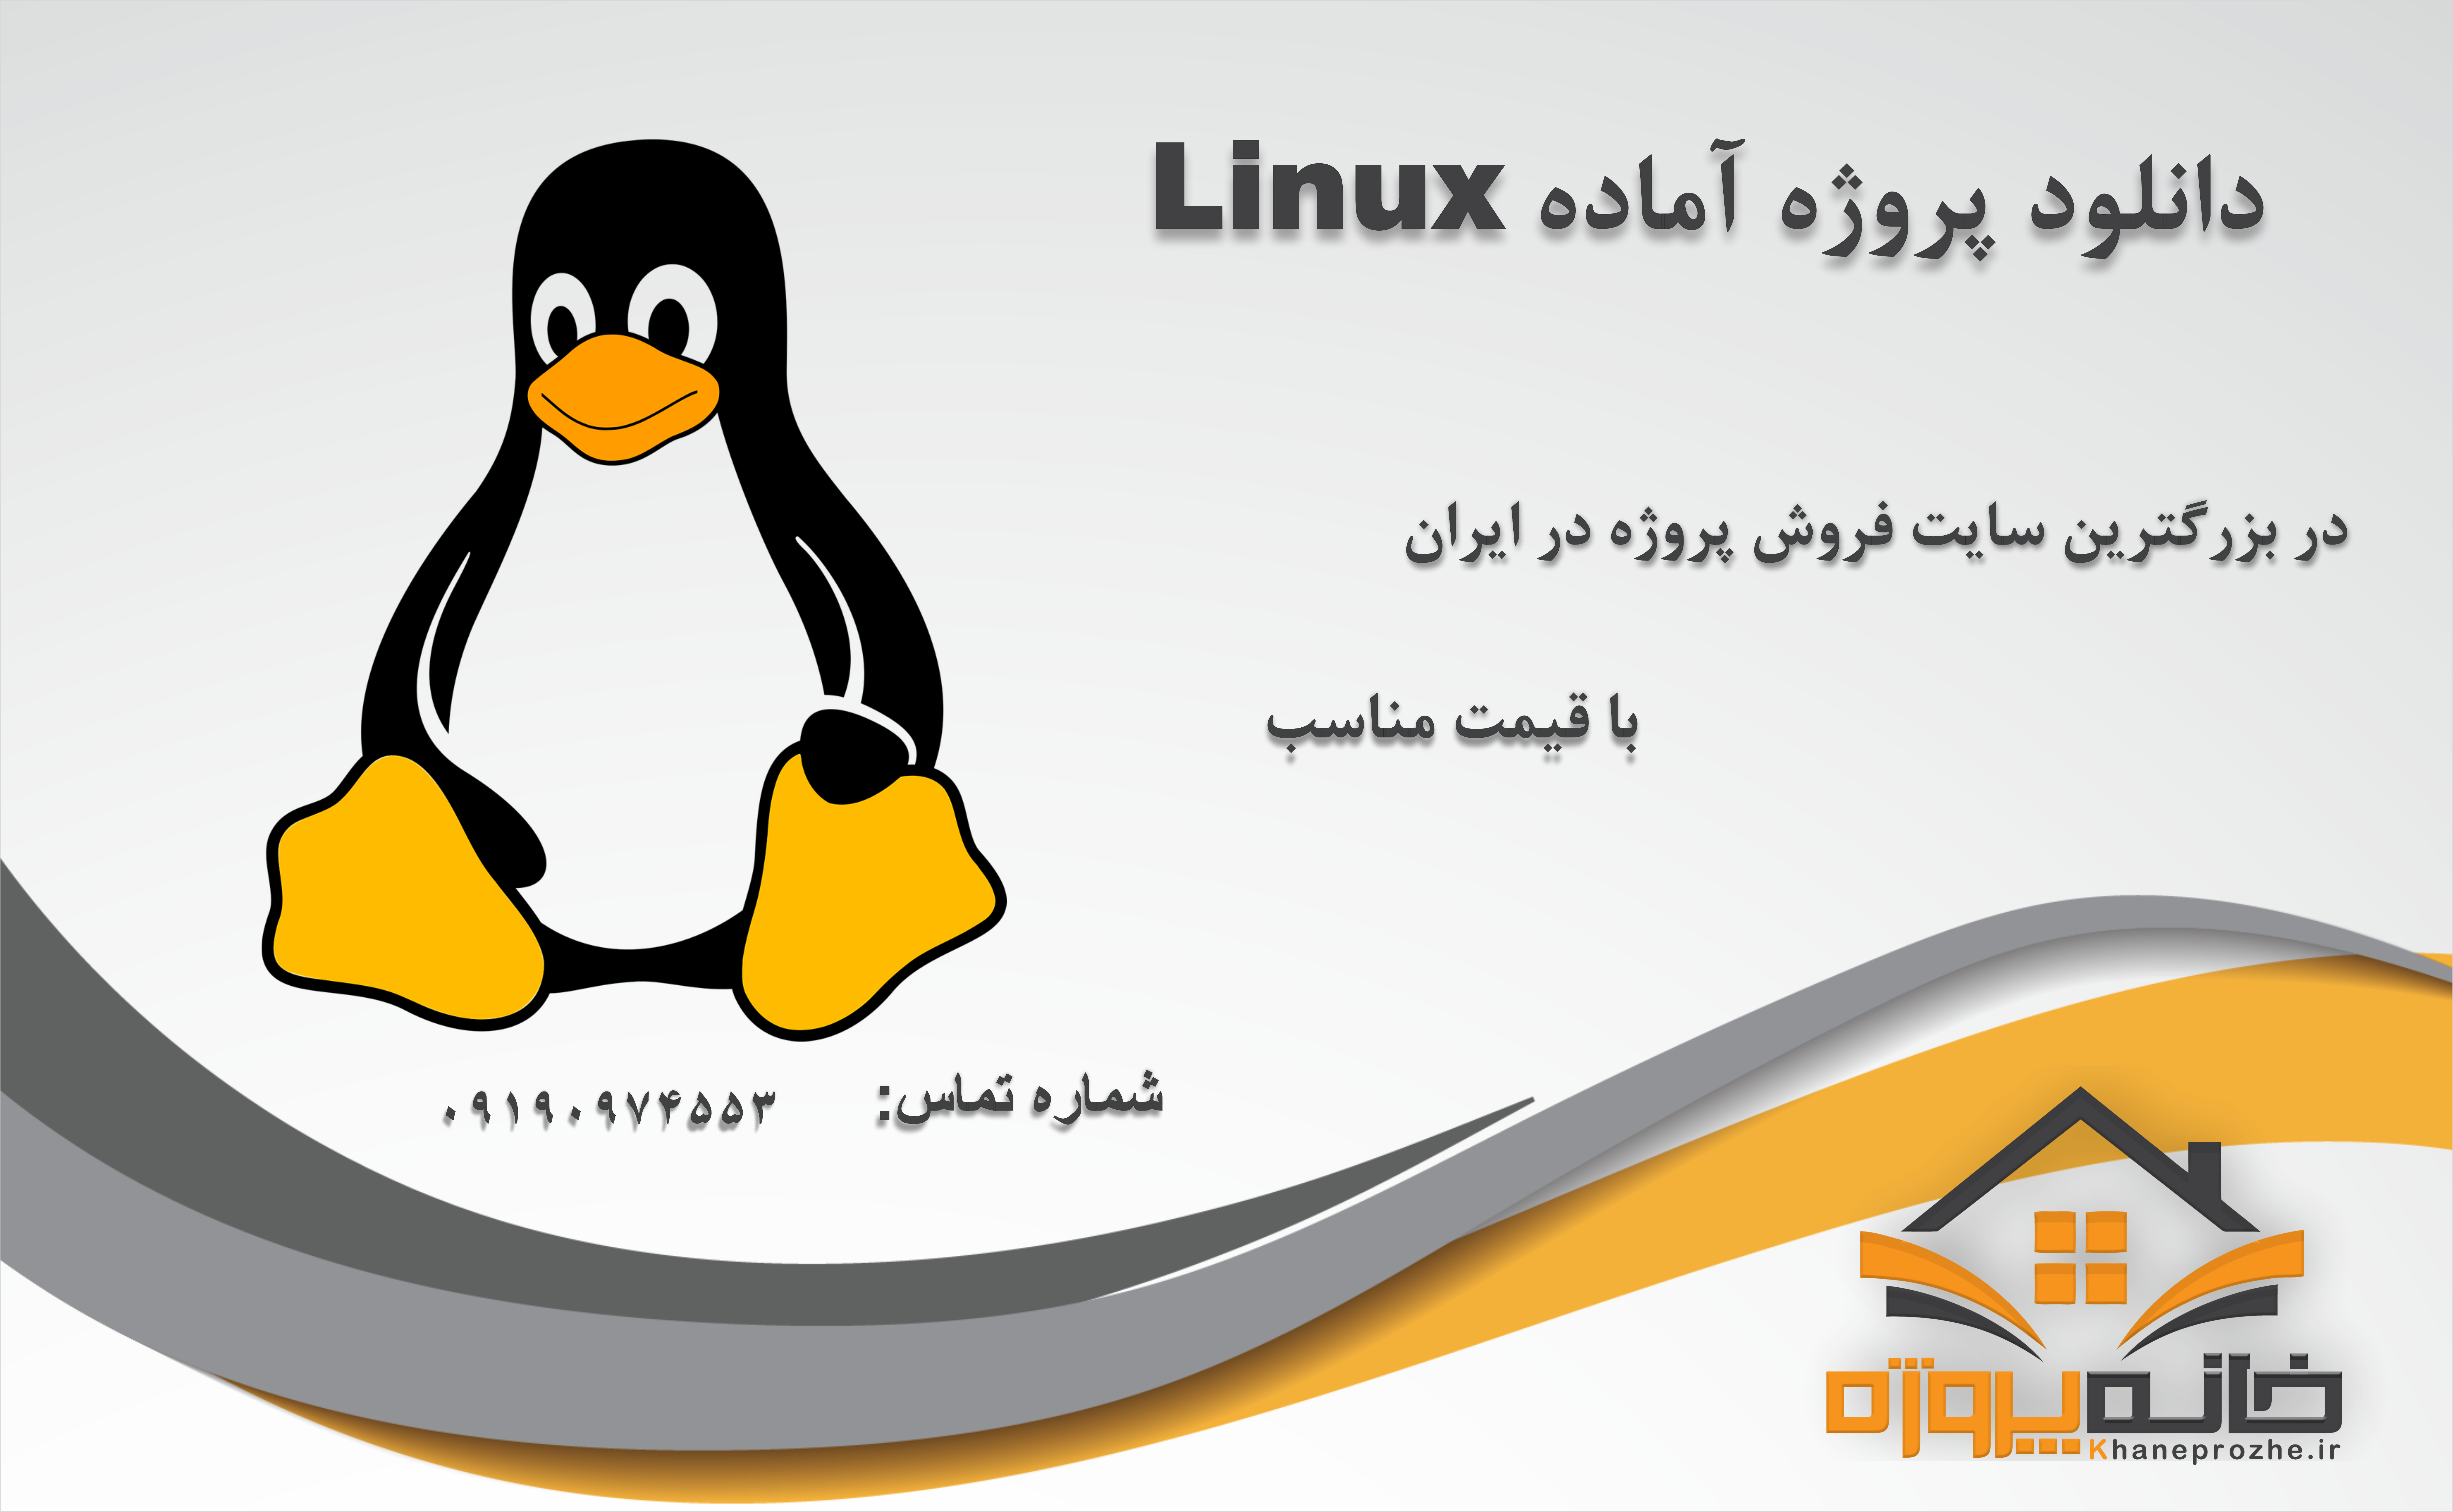 پروژه های آماده لینوکس (Linux)